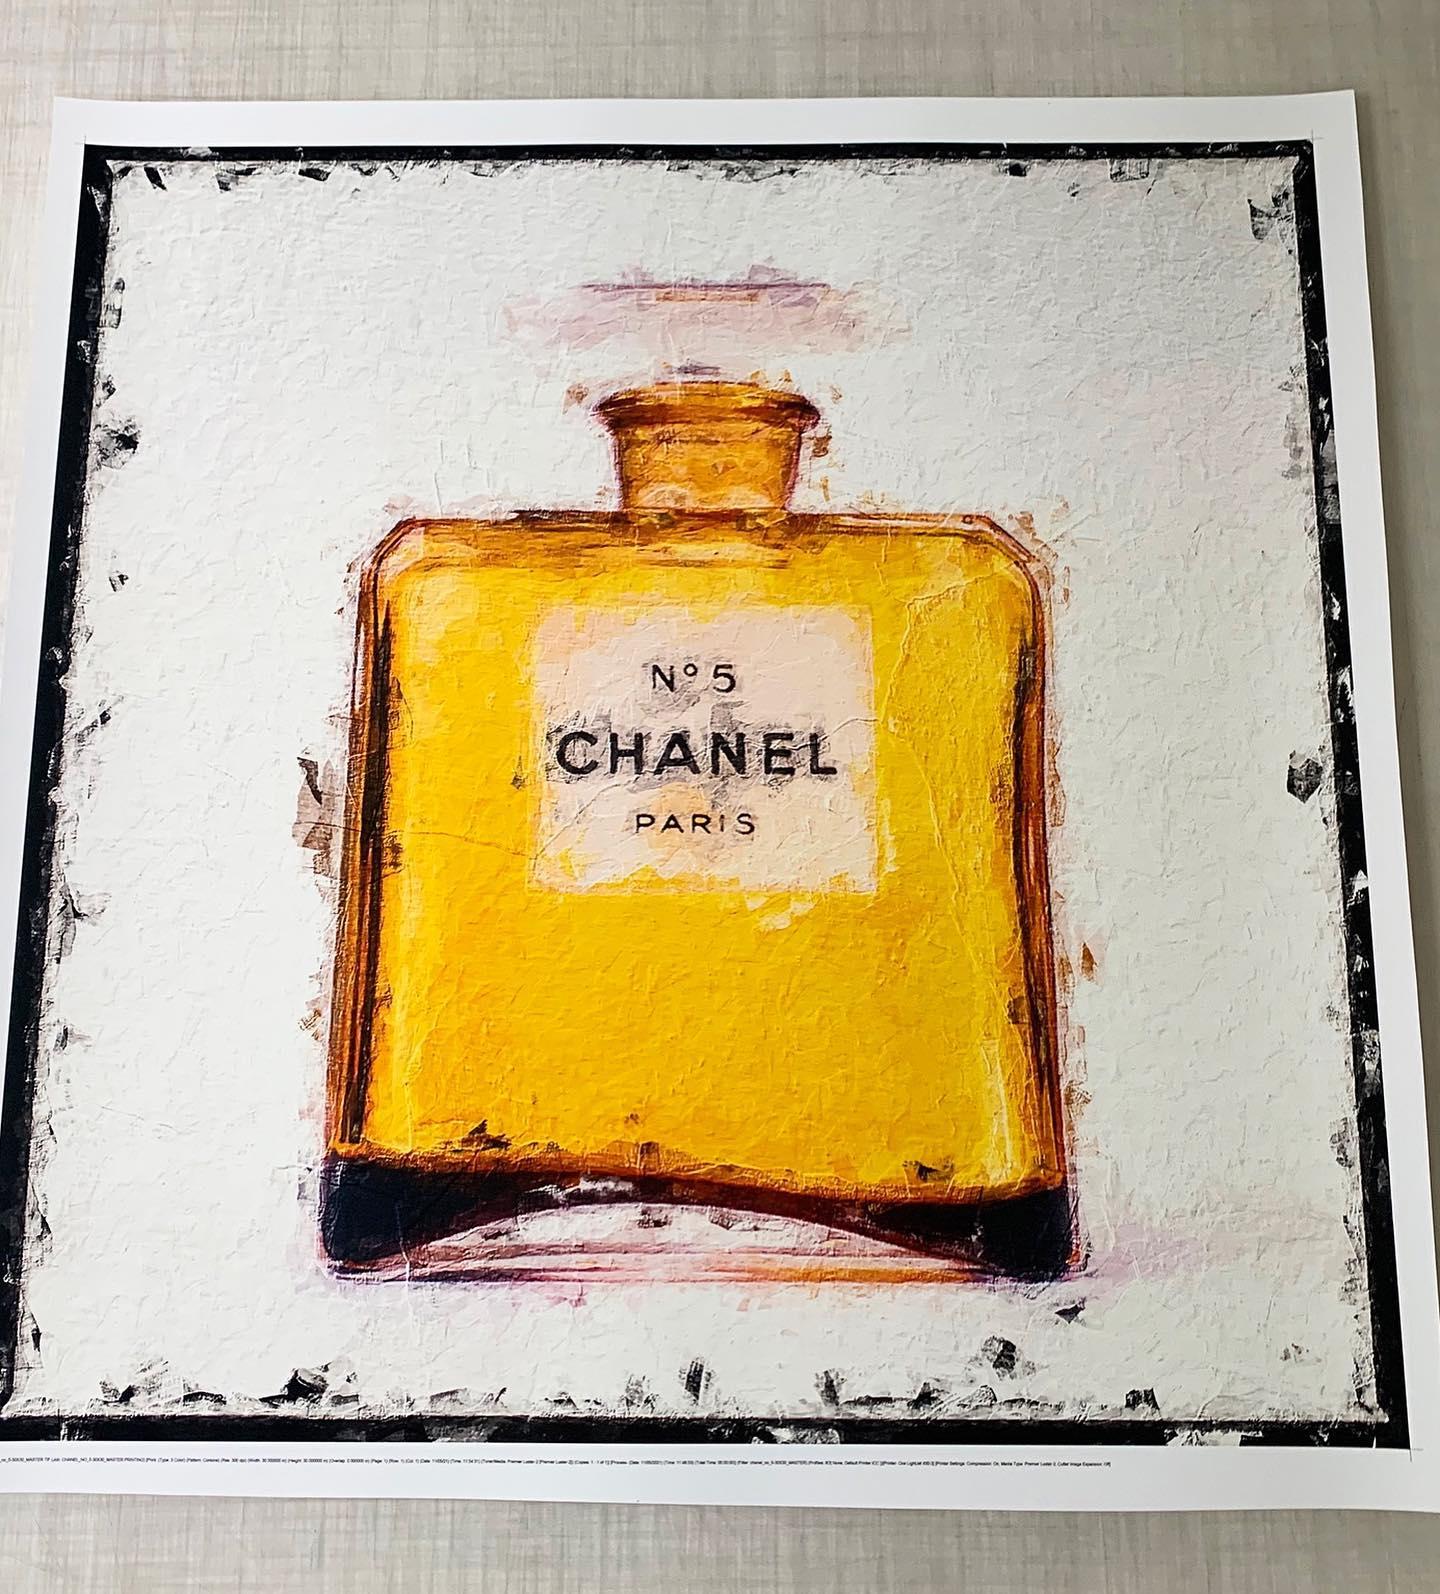 Tyler Shields - Bemalte Chanel-Flasche 1955, Fotografie 2021, gedruckt nach im Angebot 1